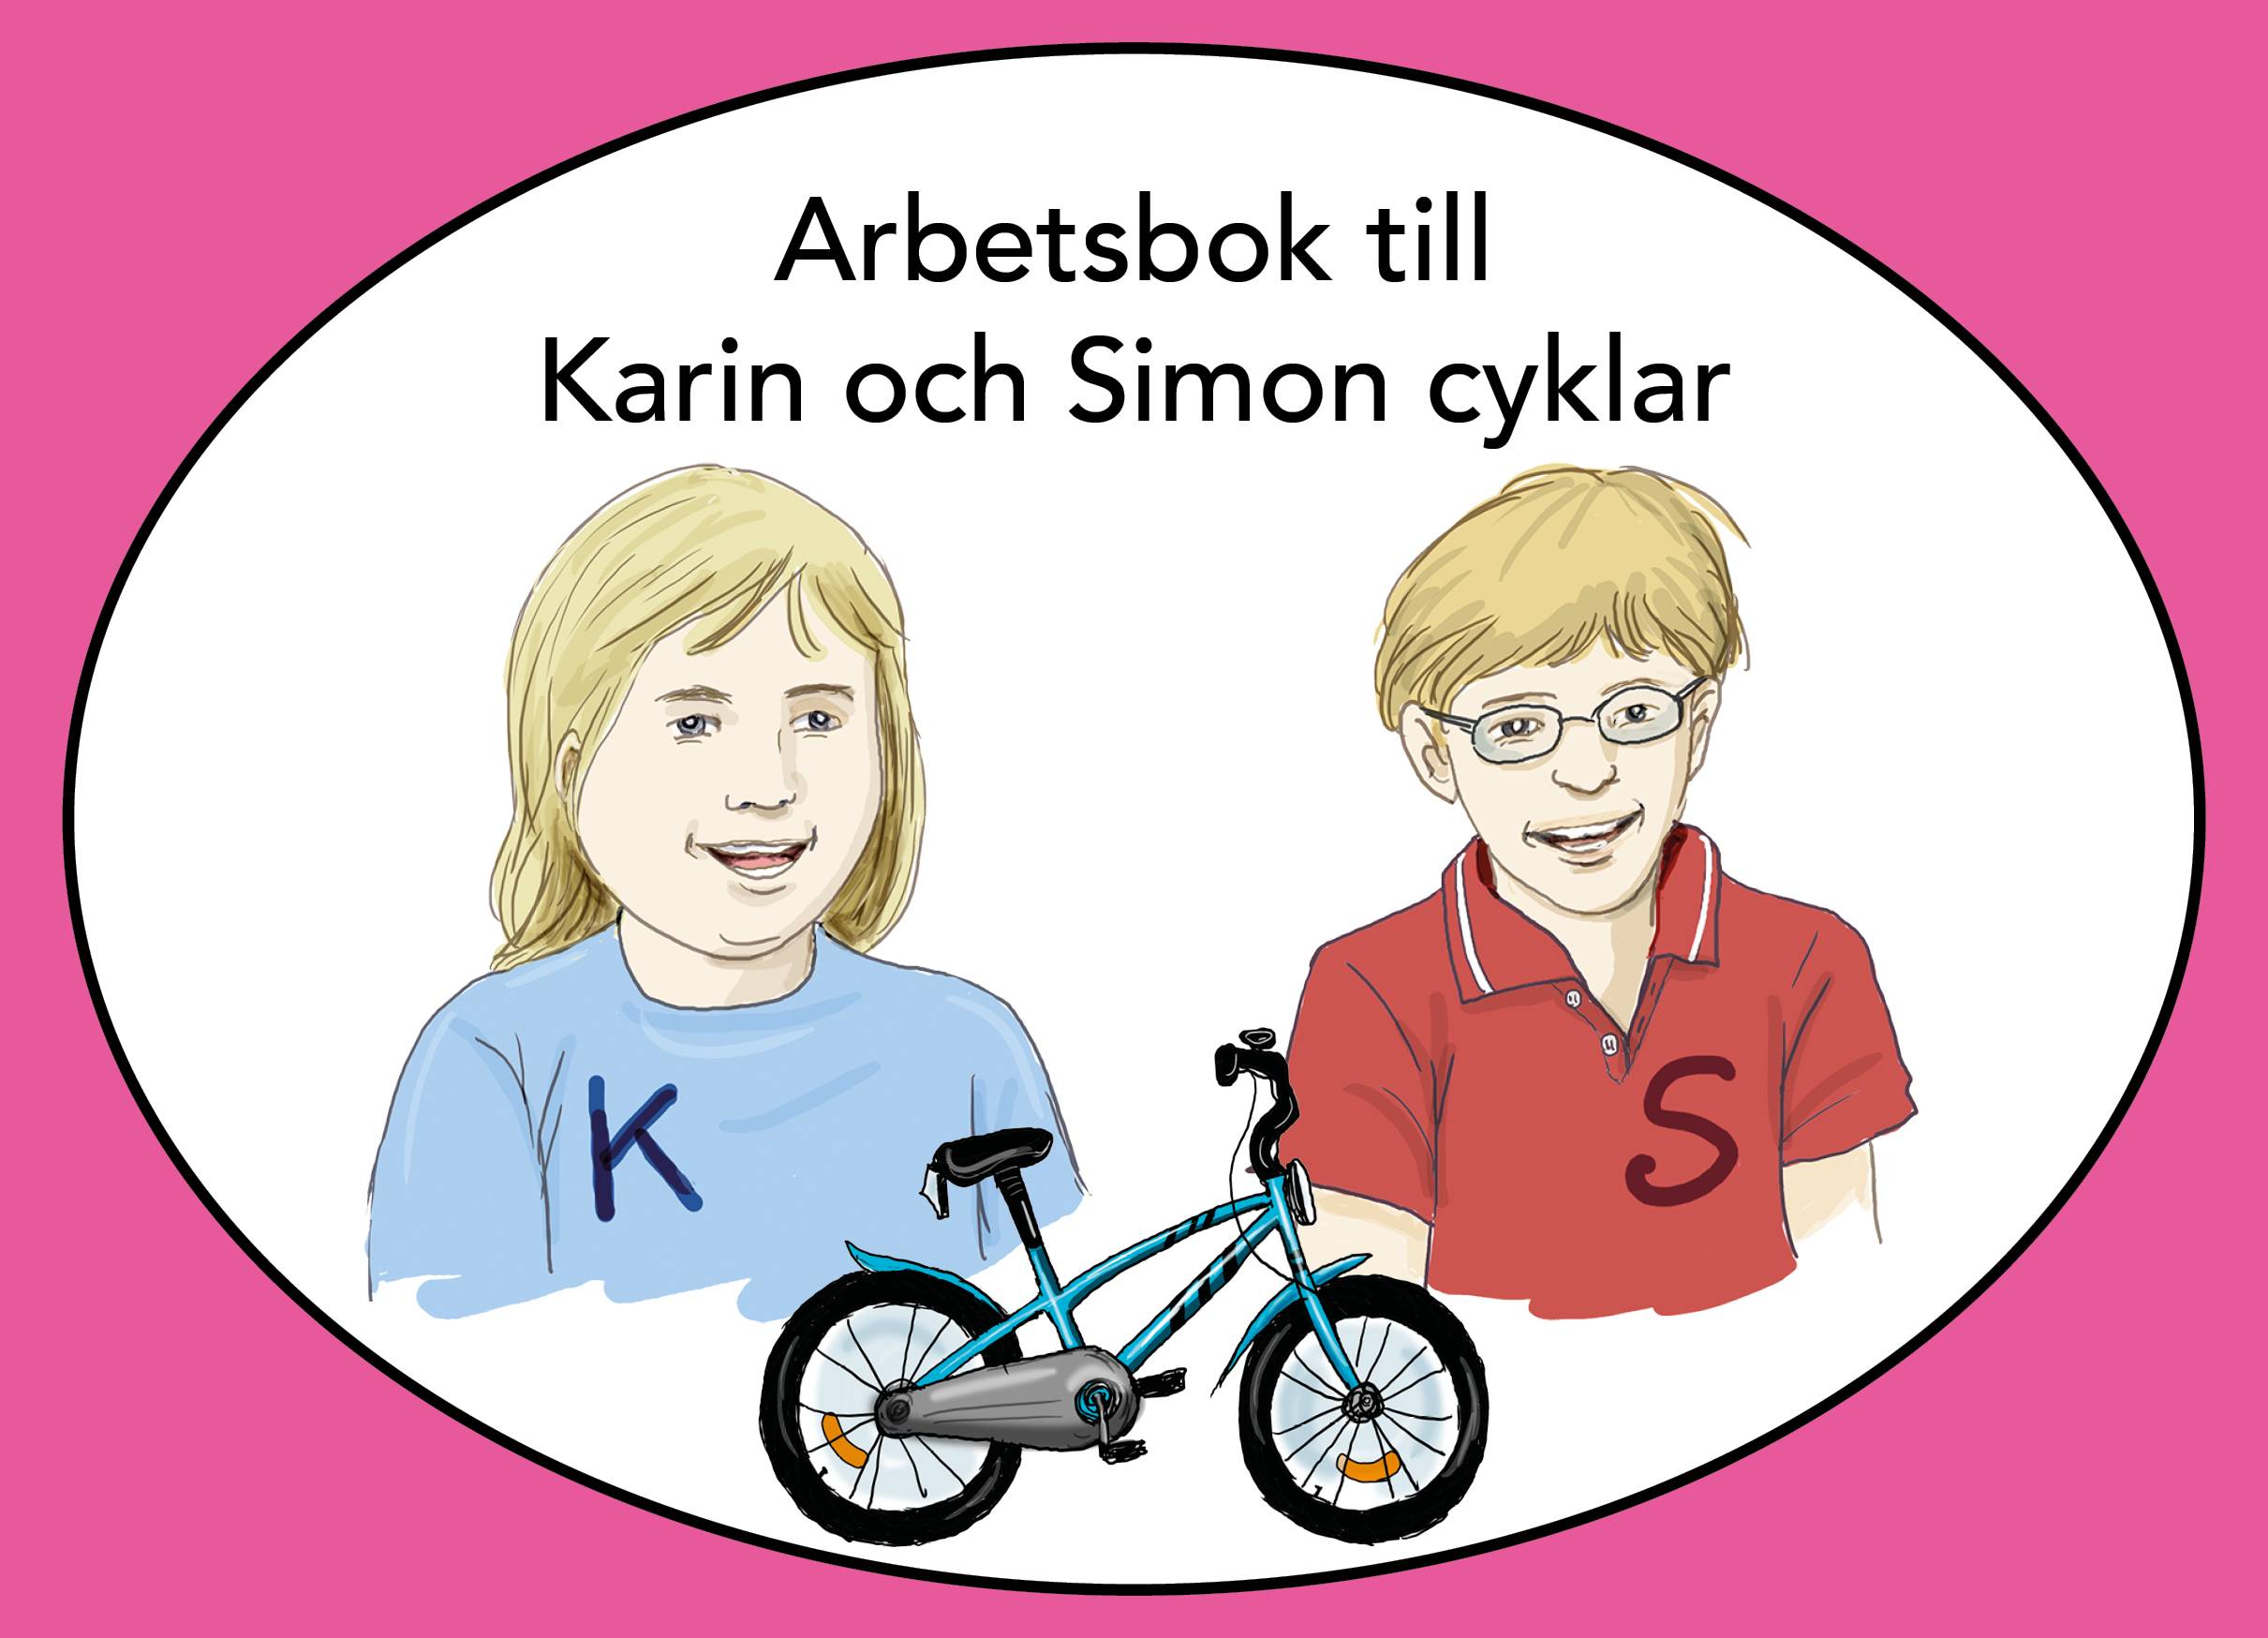 Karin och Simon cyklar, arbetsbok